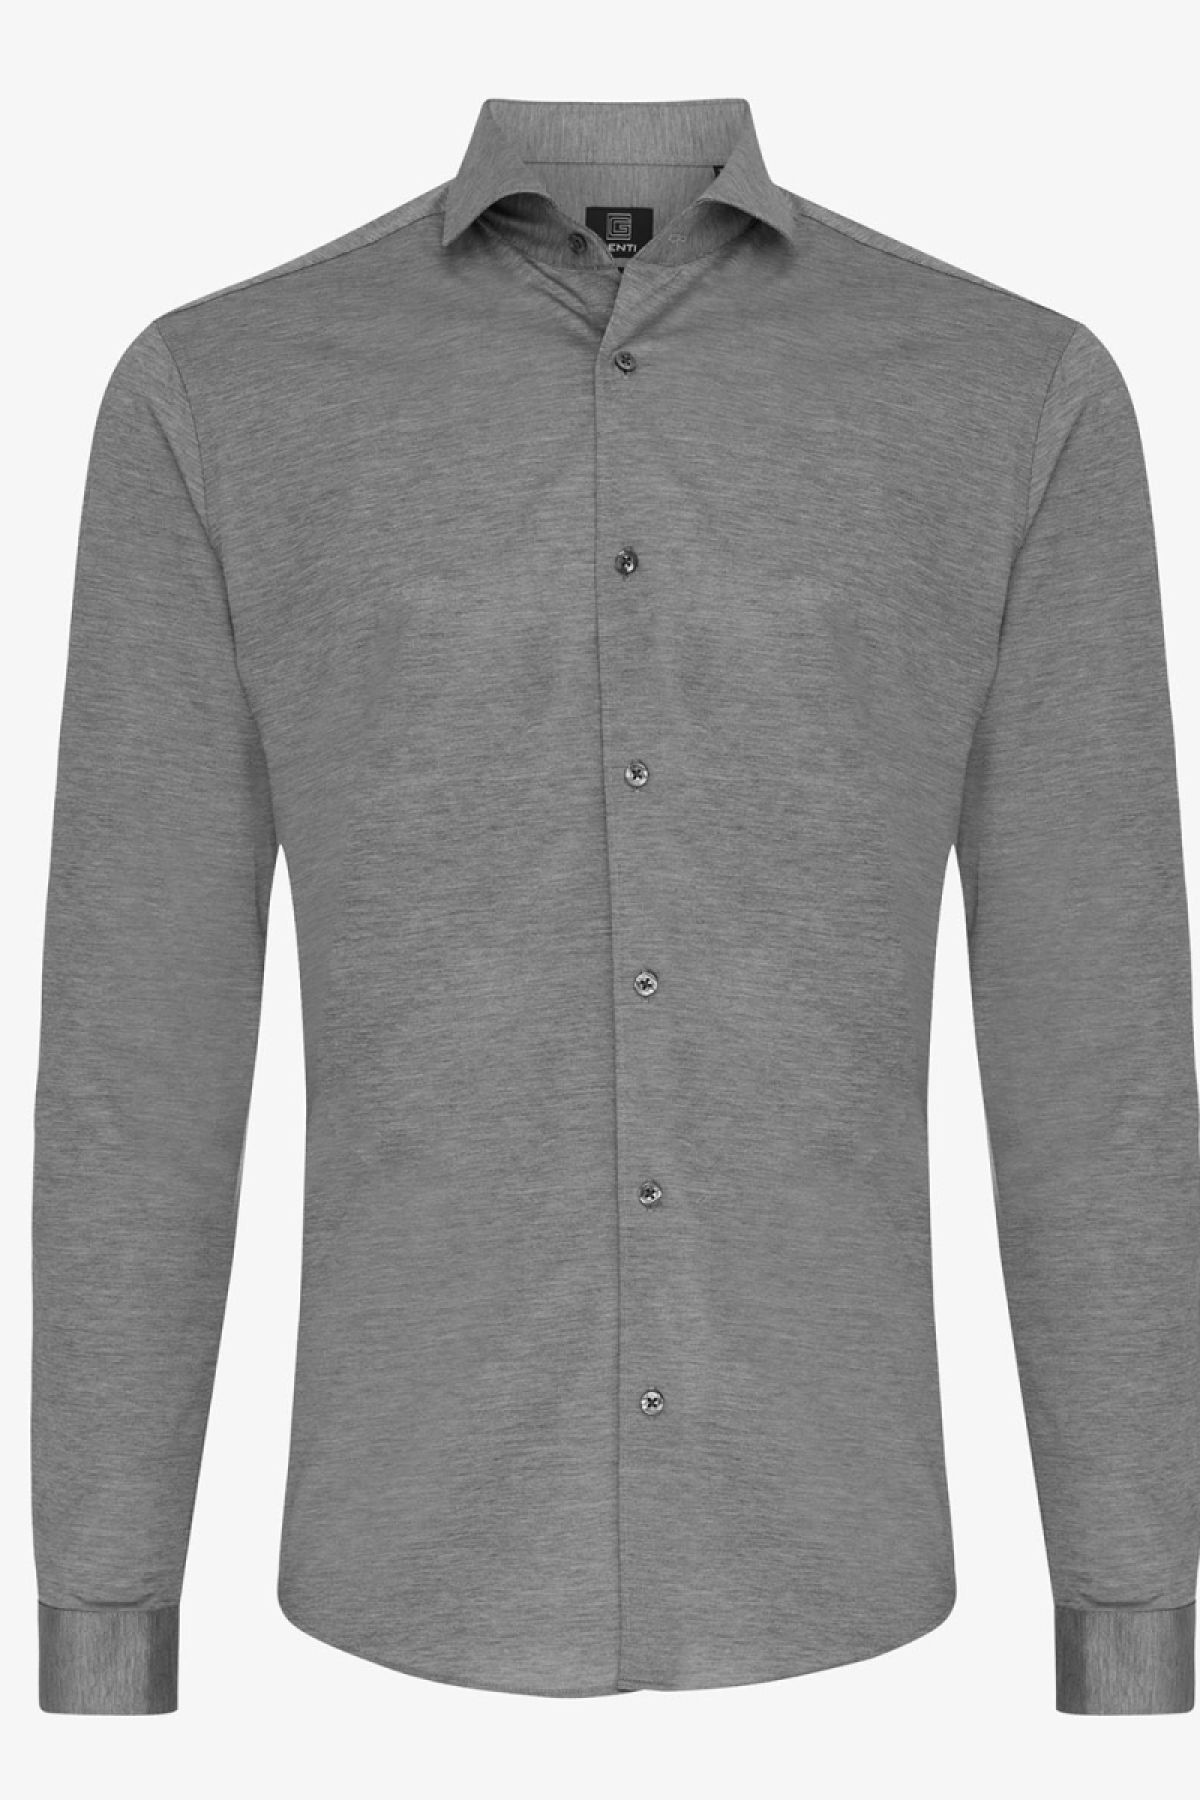 Jersey overhemd grijs